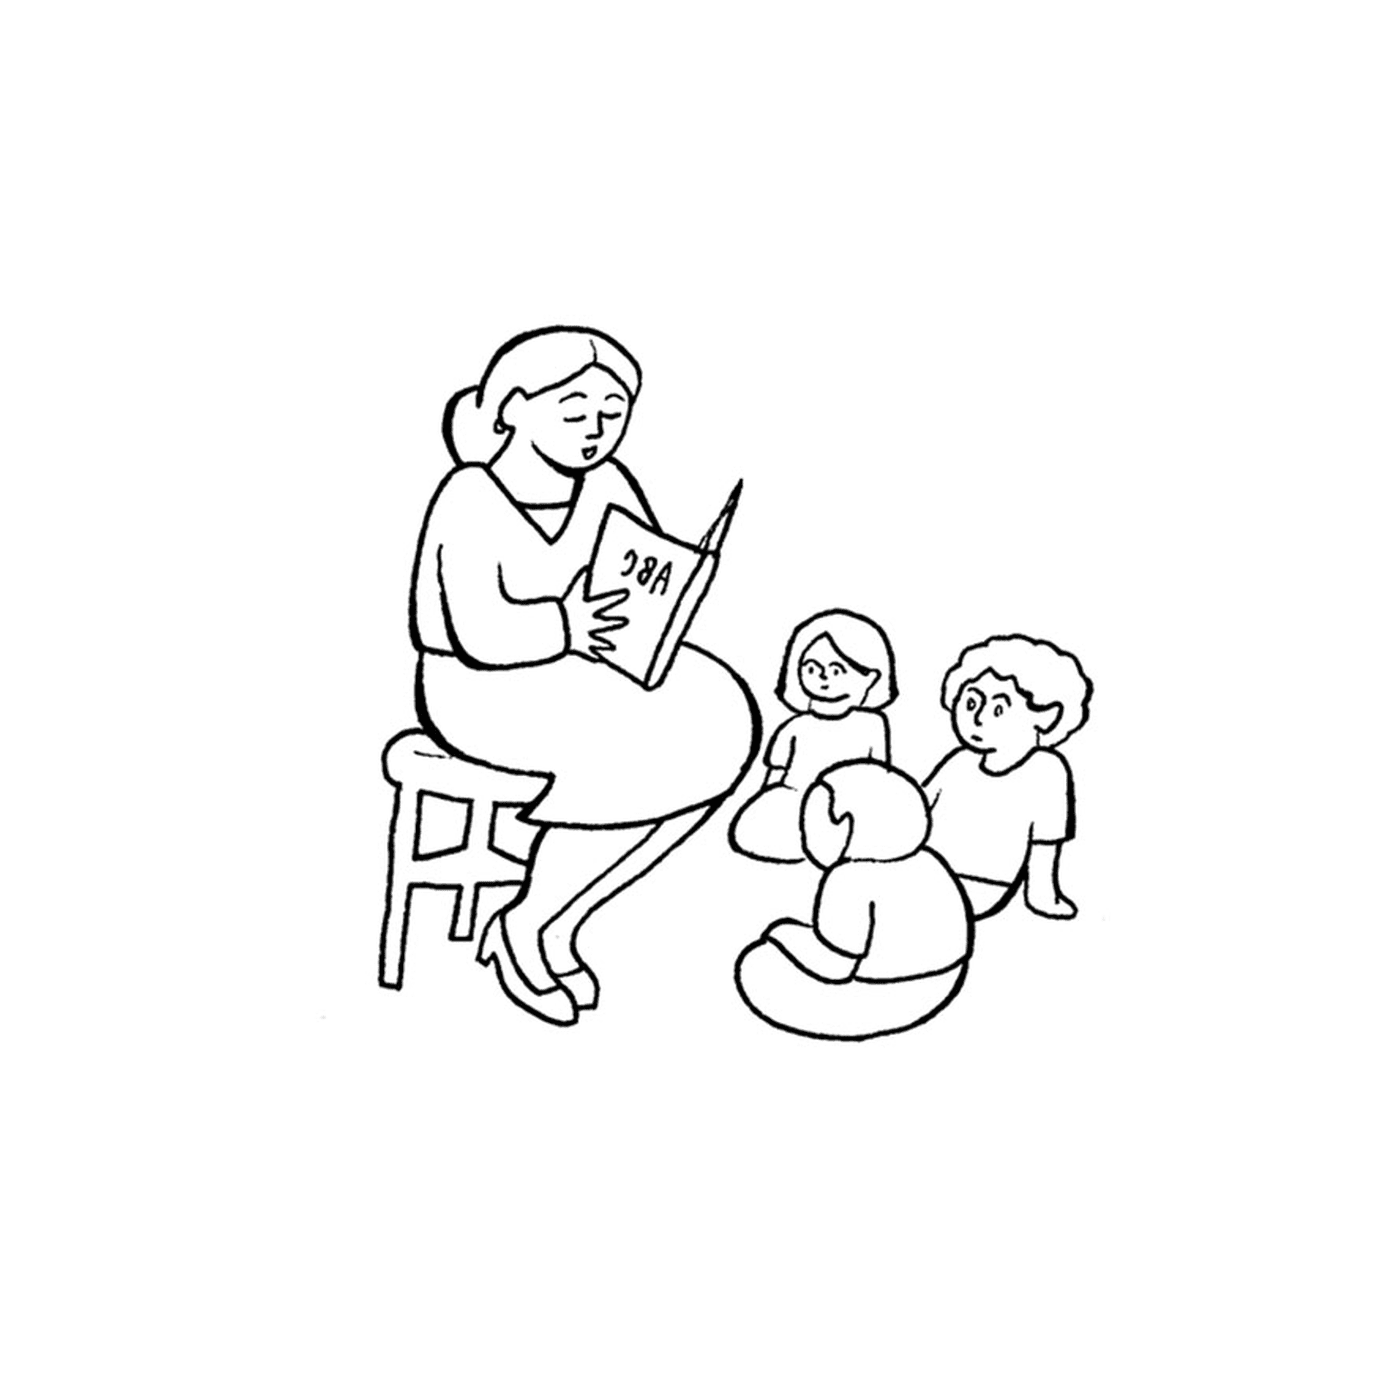   Une enseignante en train de lire un livre à deux enfants 